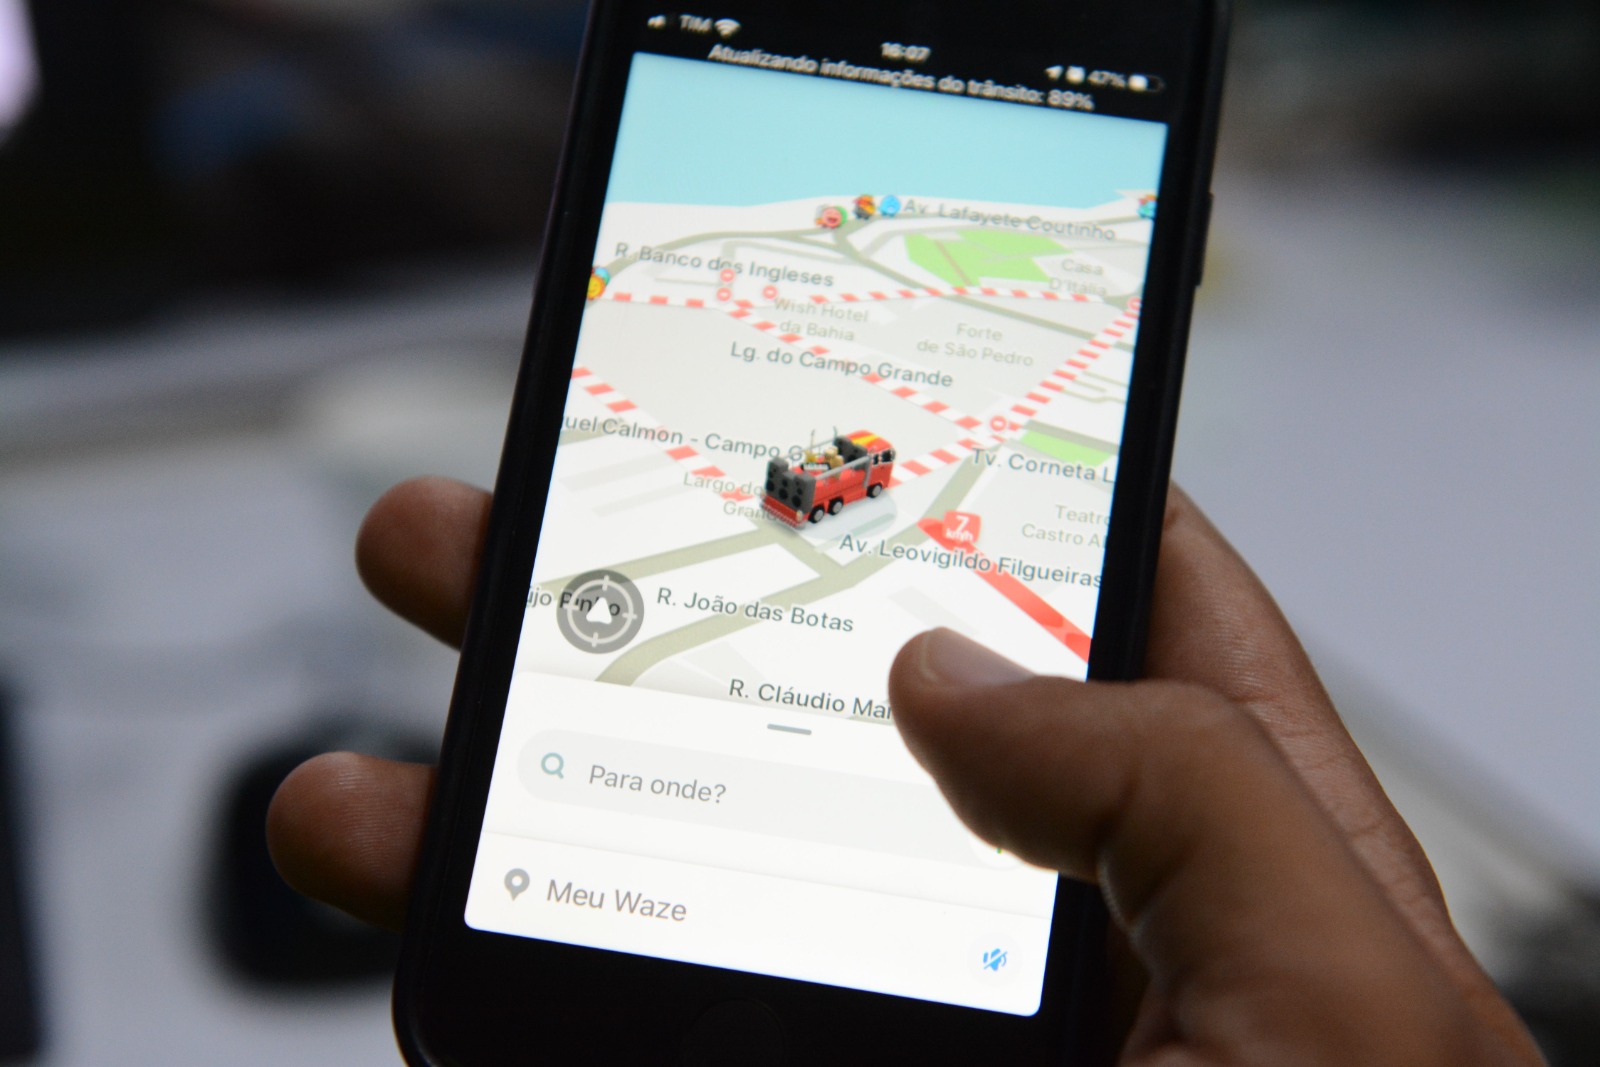 Parceria com Waze oferta mapa do Carnaval atualizado e rotas com voz de Ivete Sangalo